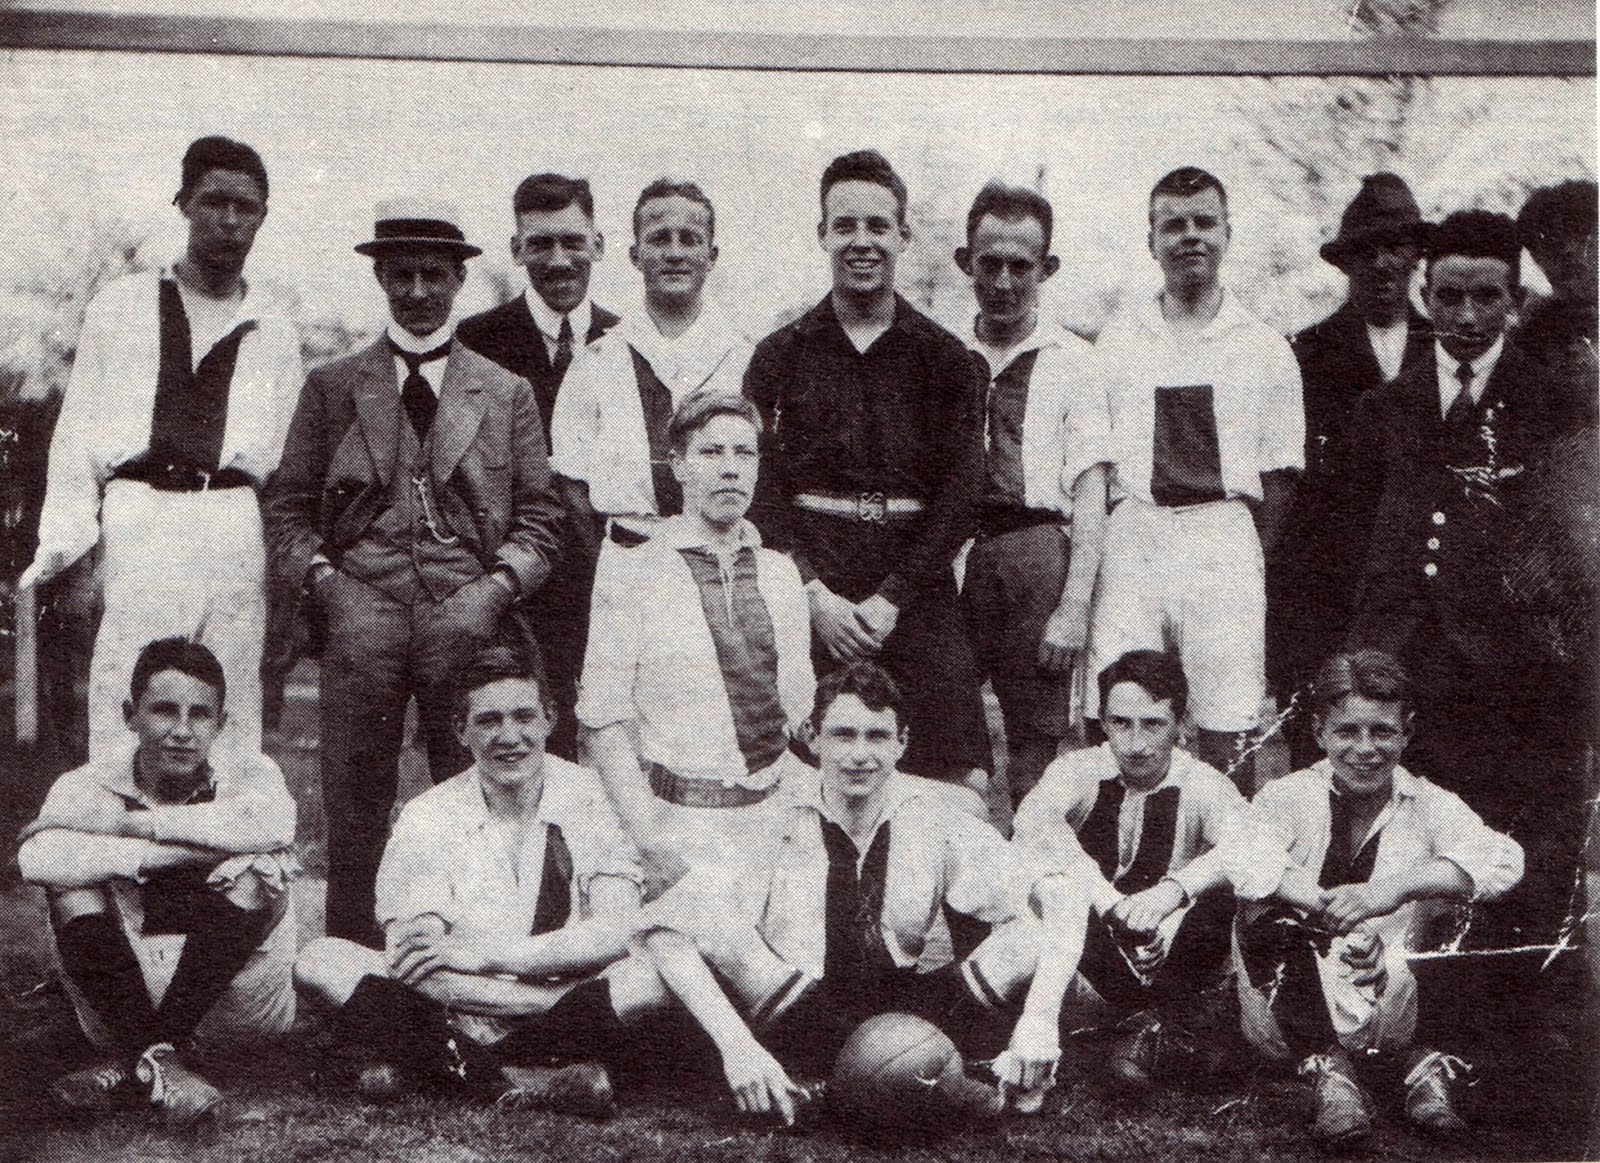 Sportfoto periode 1910-1920